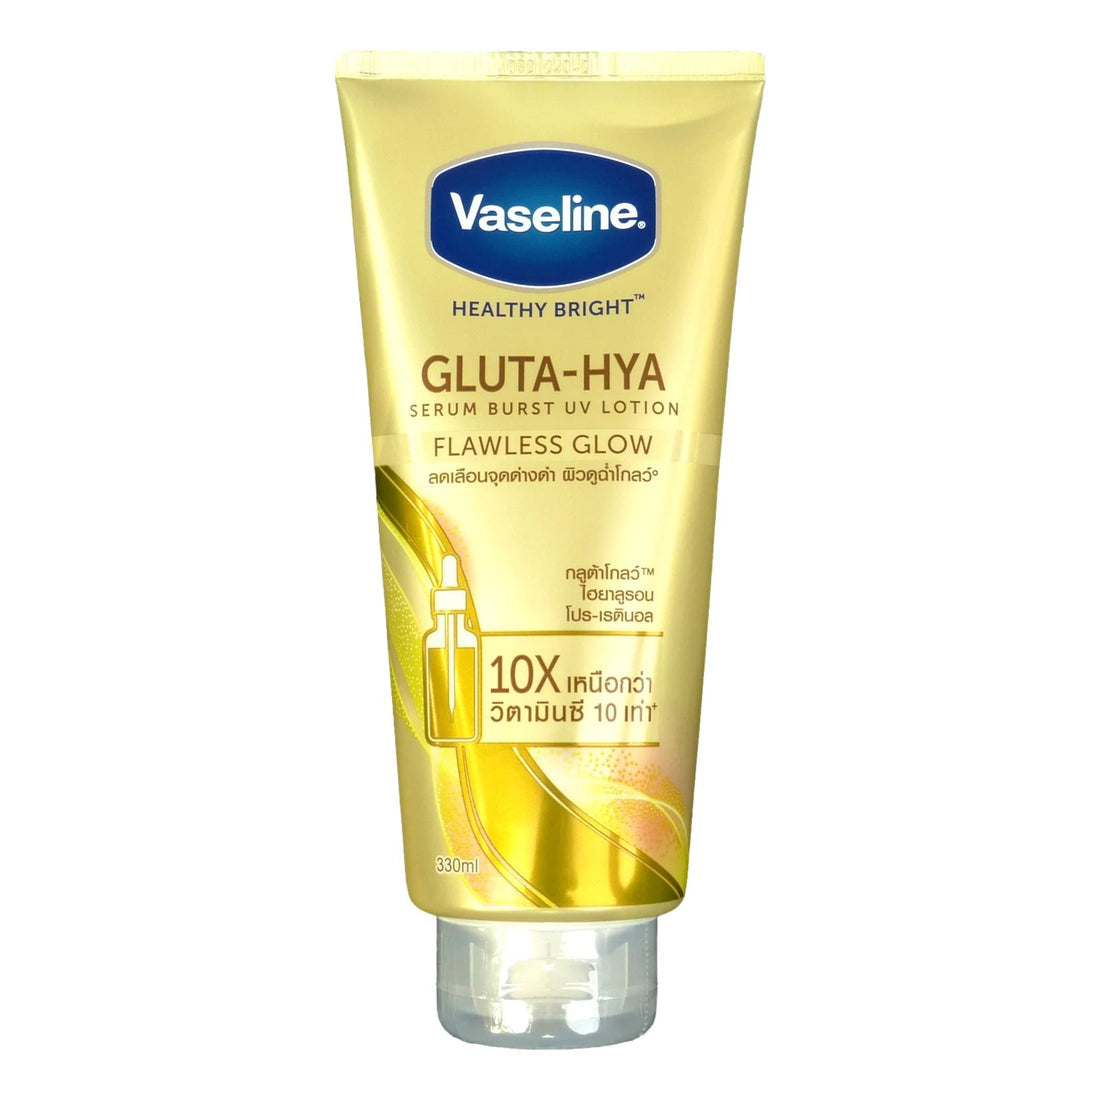 Vaseline Gluta-Hya Flawless Glow, 200 ml, serum-in-lotion, förstärkt med  glutaglow, för synligt ljusare hud från 1:a användningen